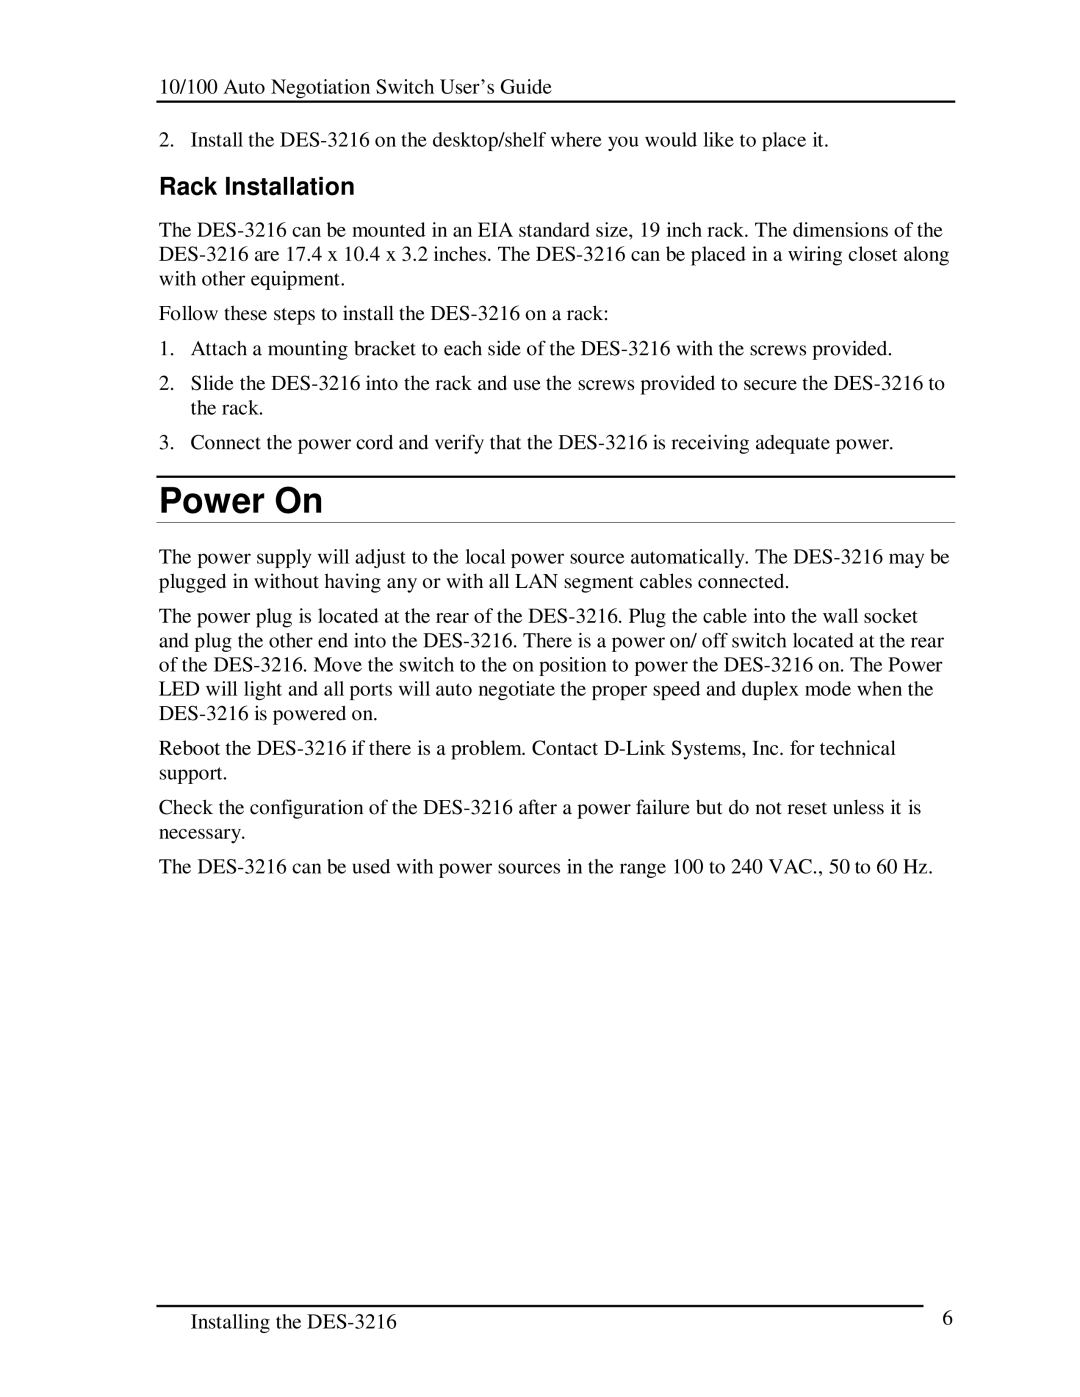 D-Link DES-3216 manual Power On, Rack Installation 